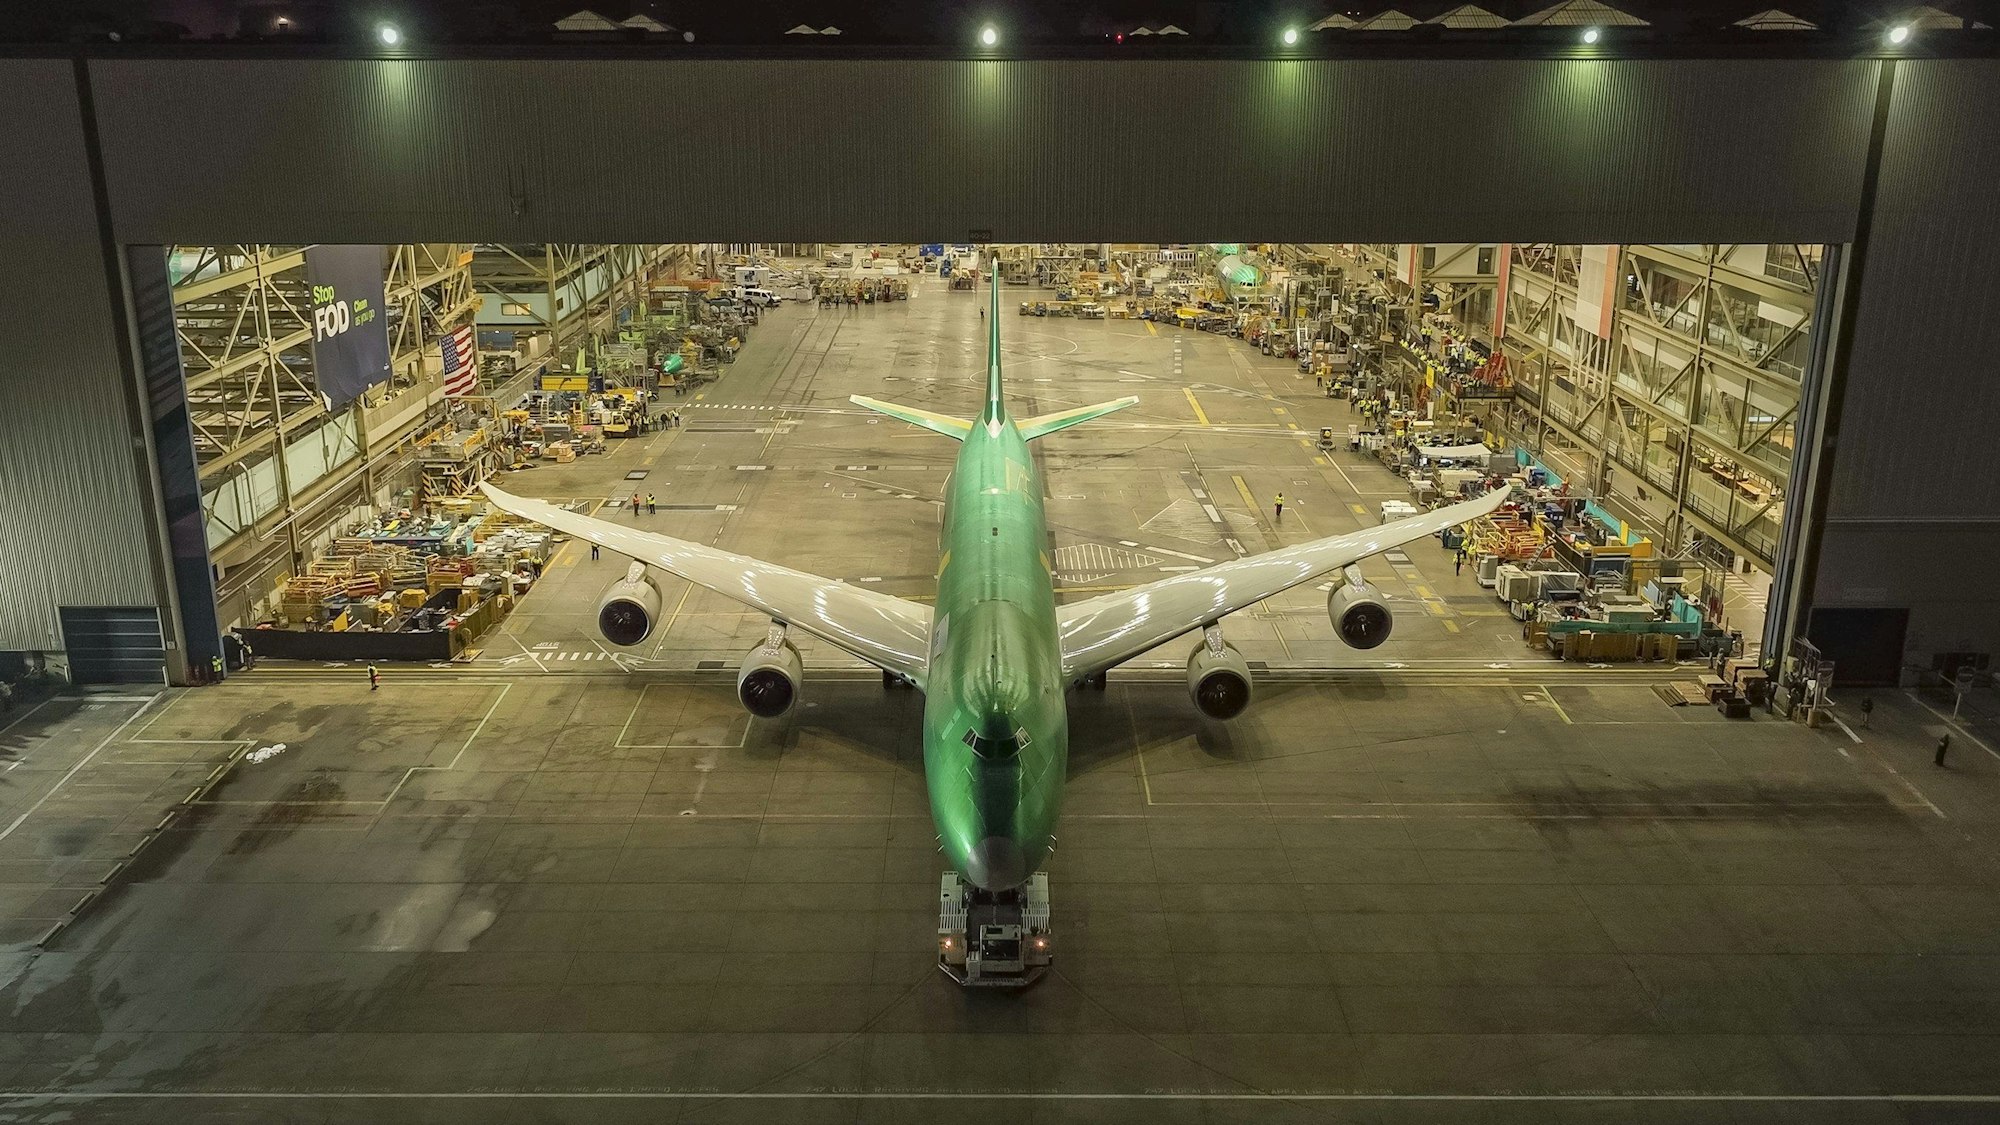 Die lttze Boeing 747 verlässt den Hangar. Das Tor ist offen und das Flugzeug wird rausgeführt.